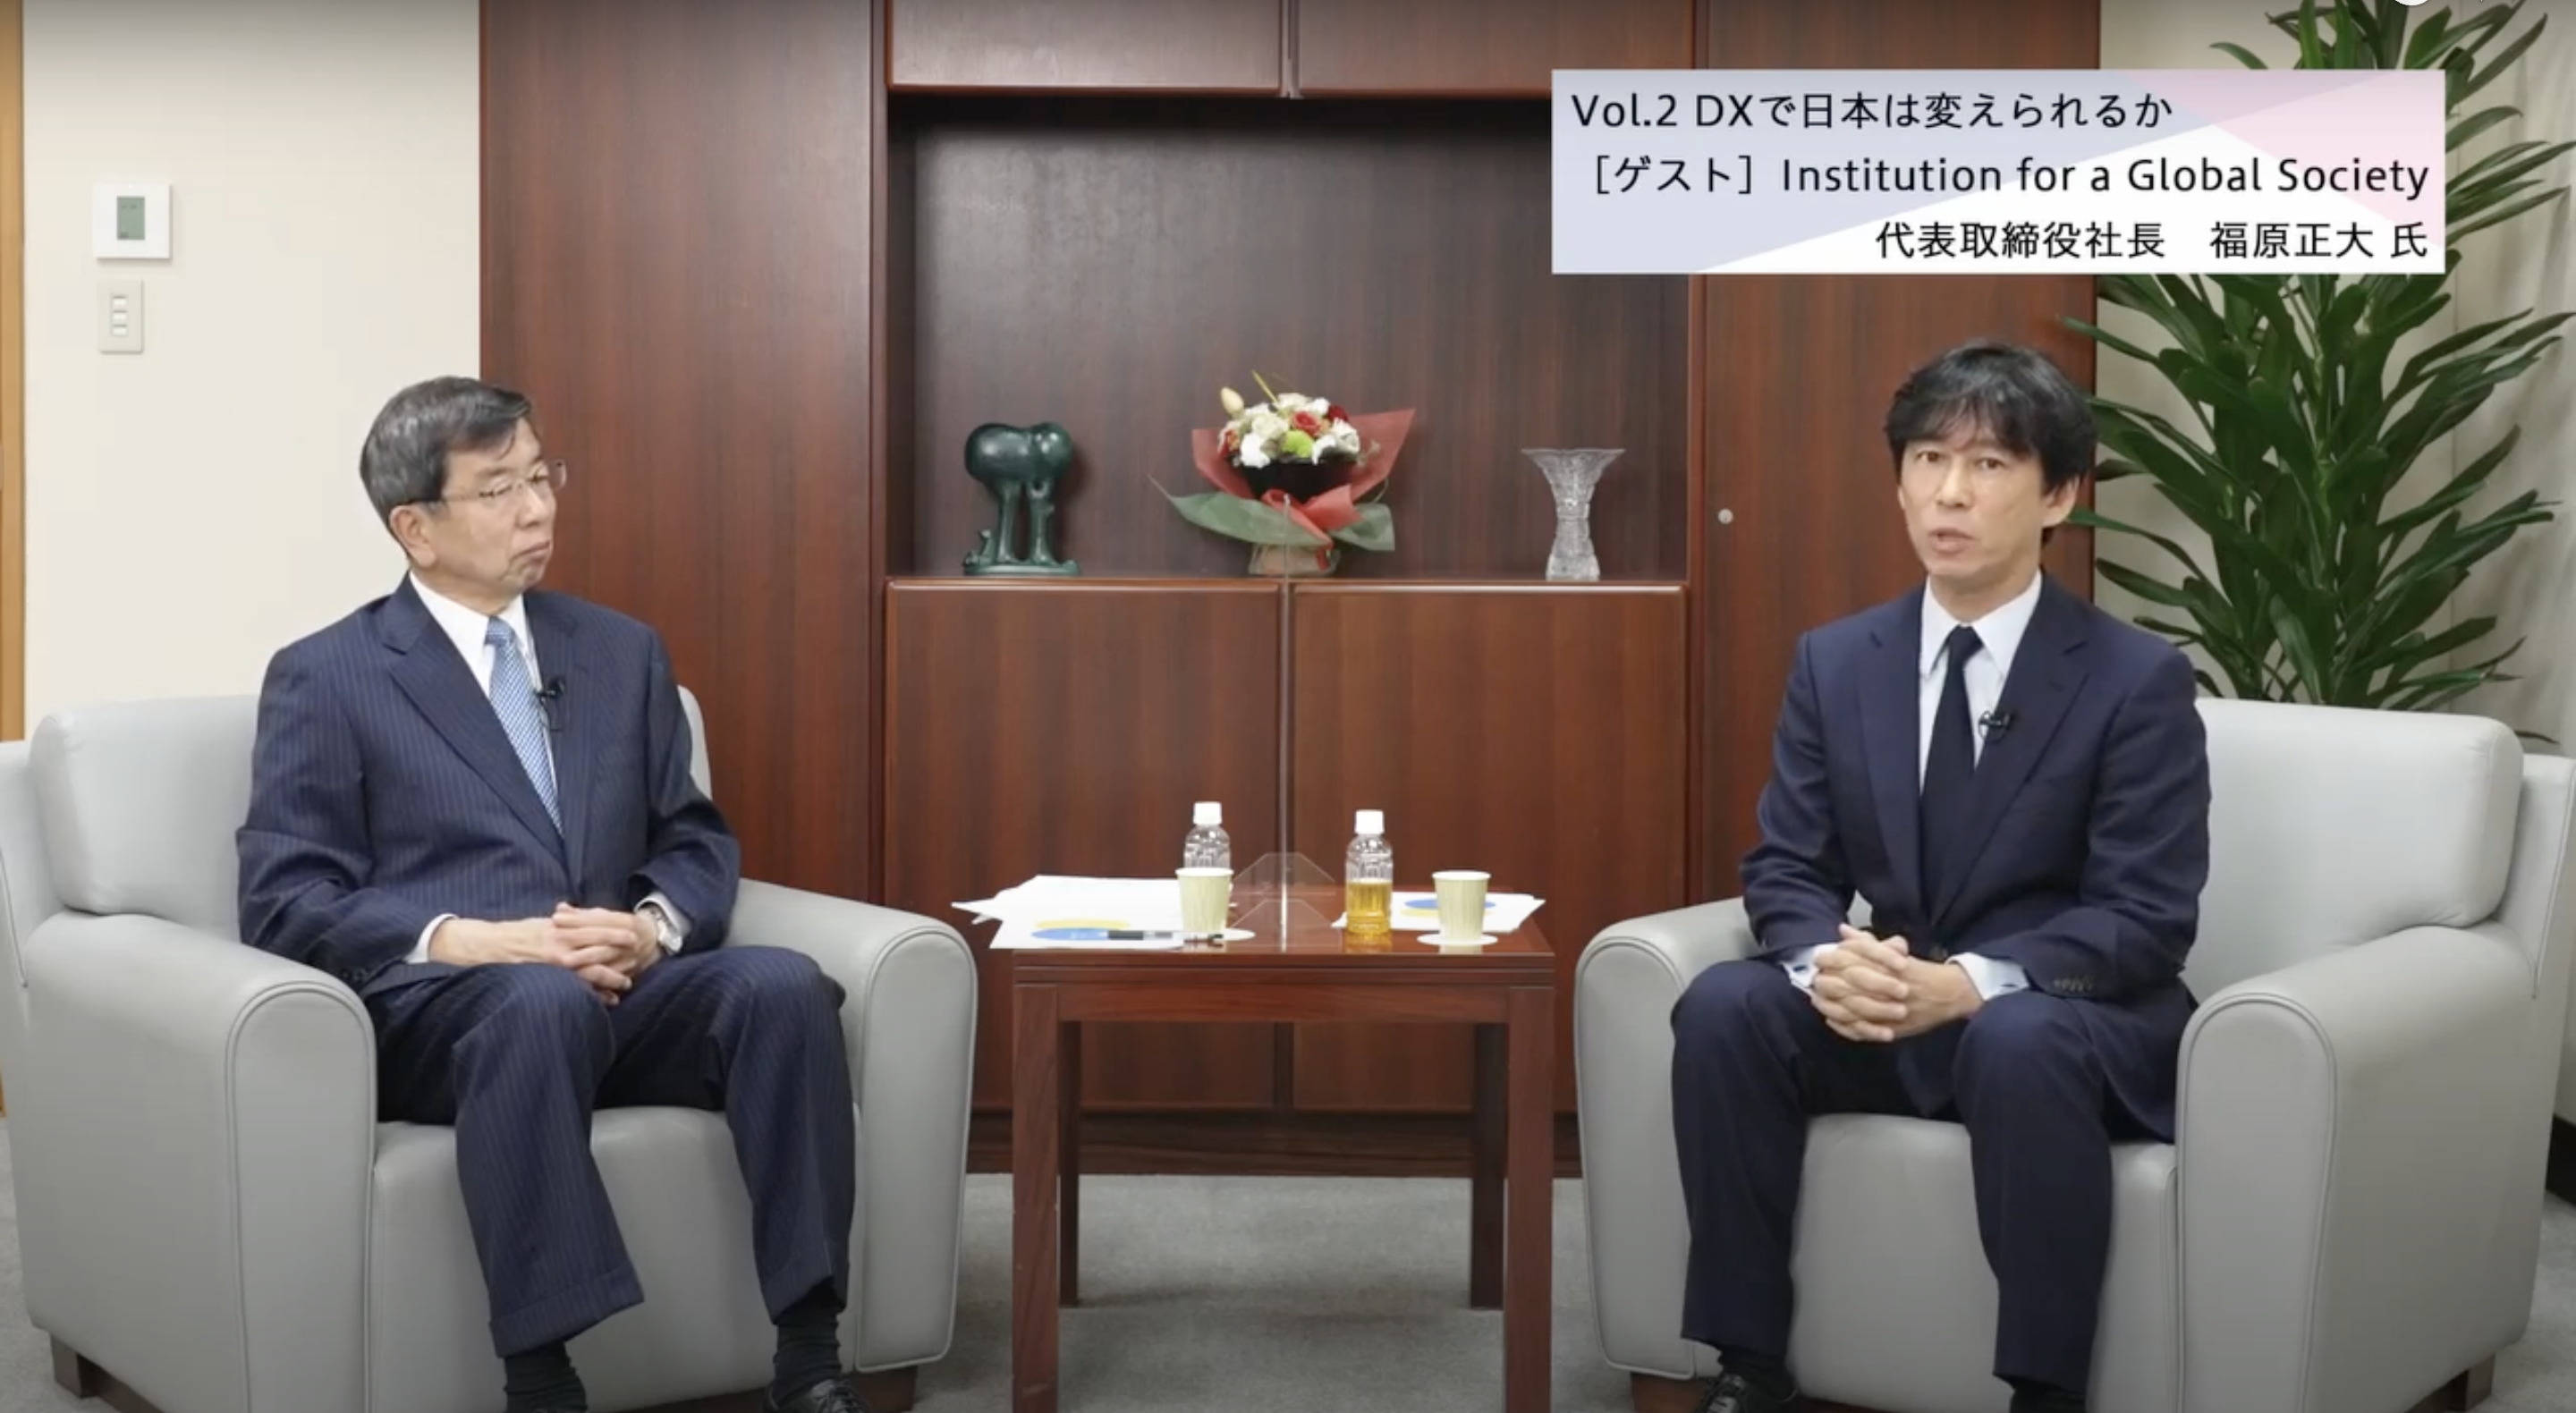 みずほR&T 理事長・中尾 武彦様と弊社代表・福原のDX対談動画が公開